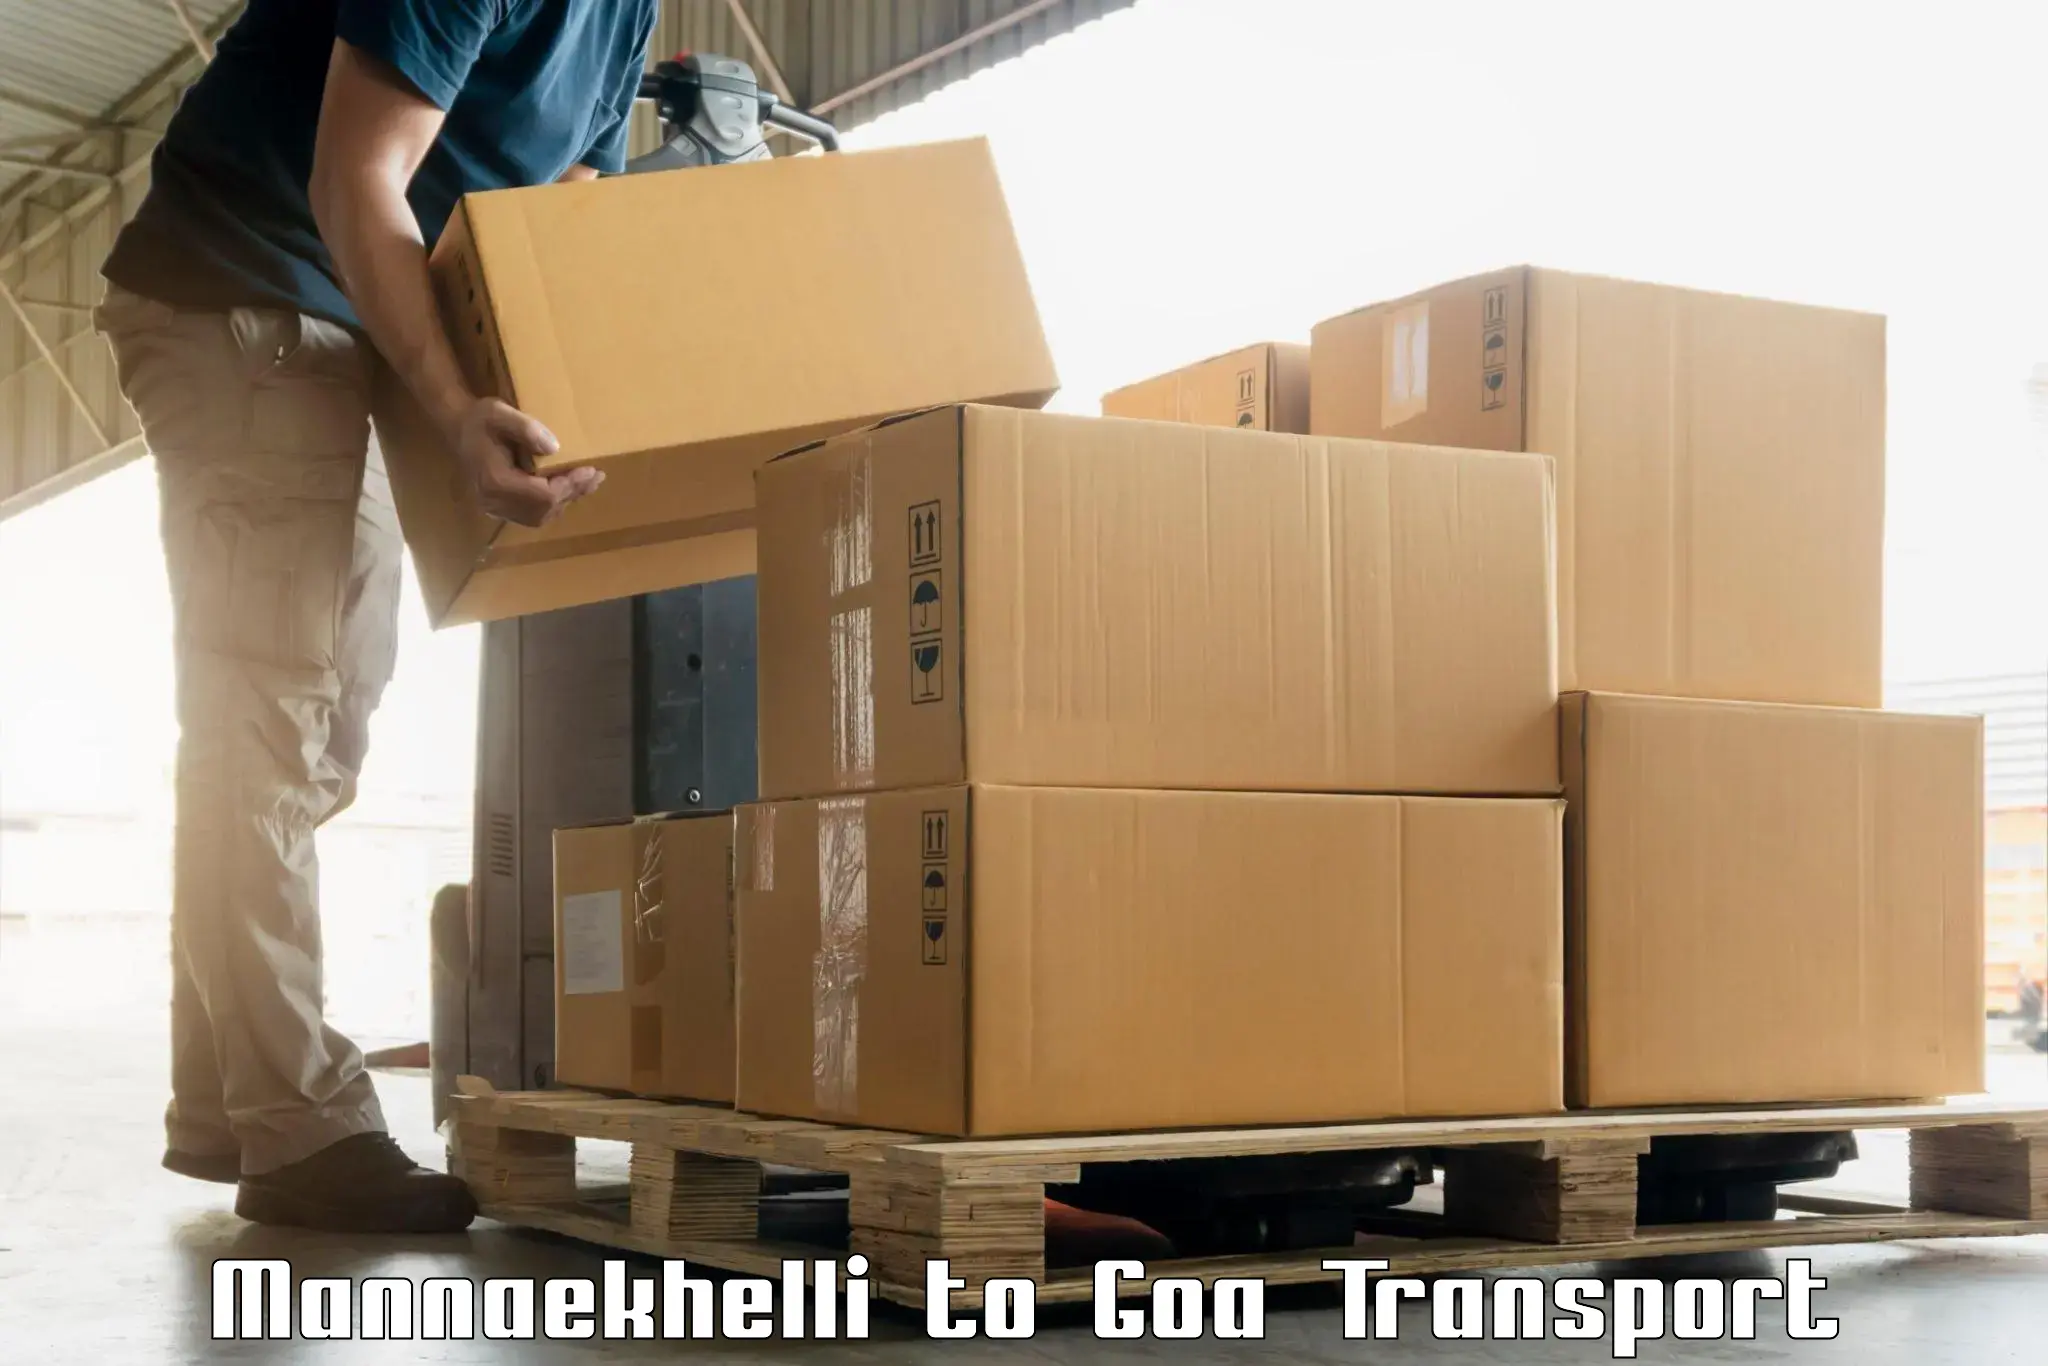 Online transport booking Mannaekhelli to Mormugao Port